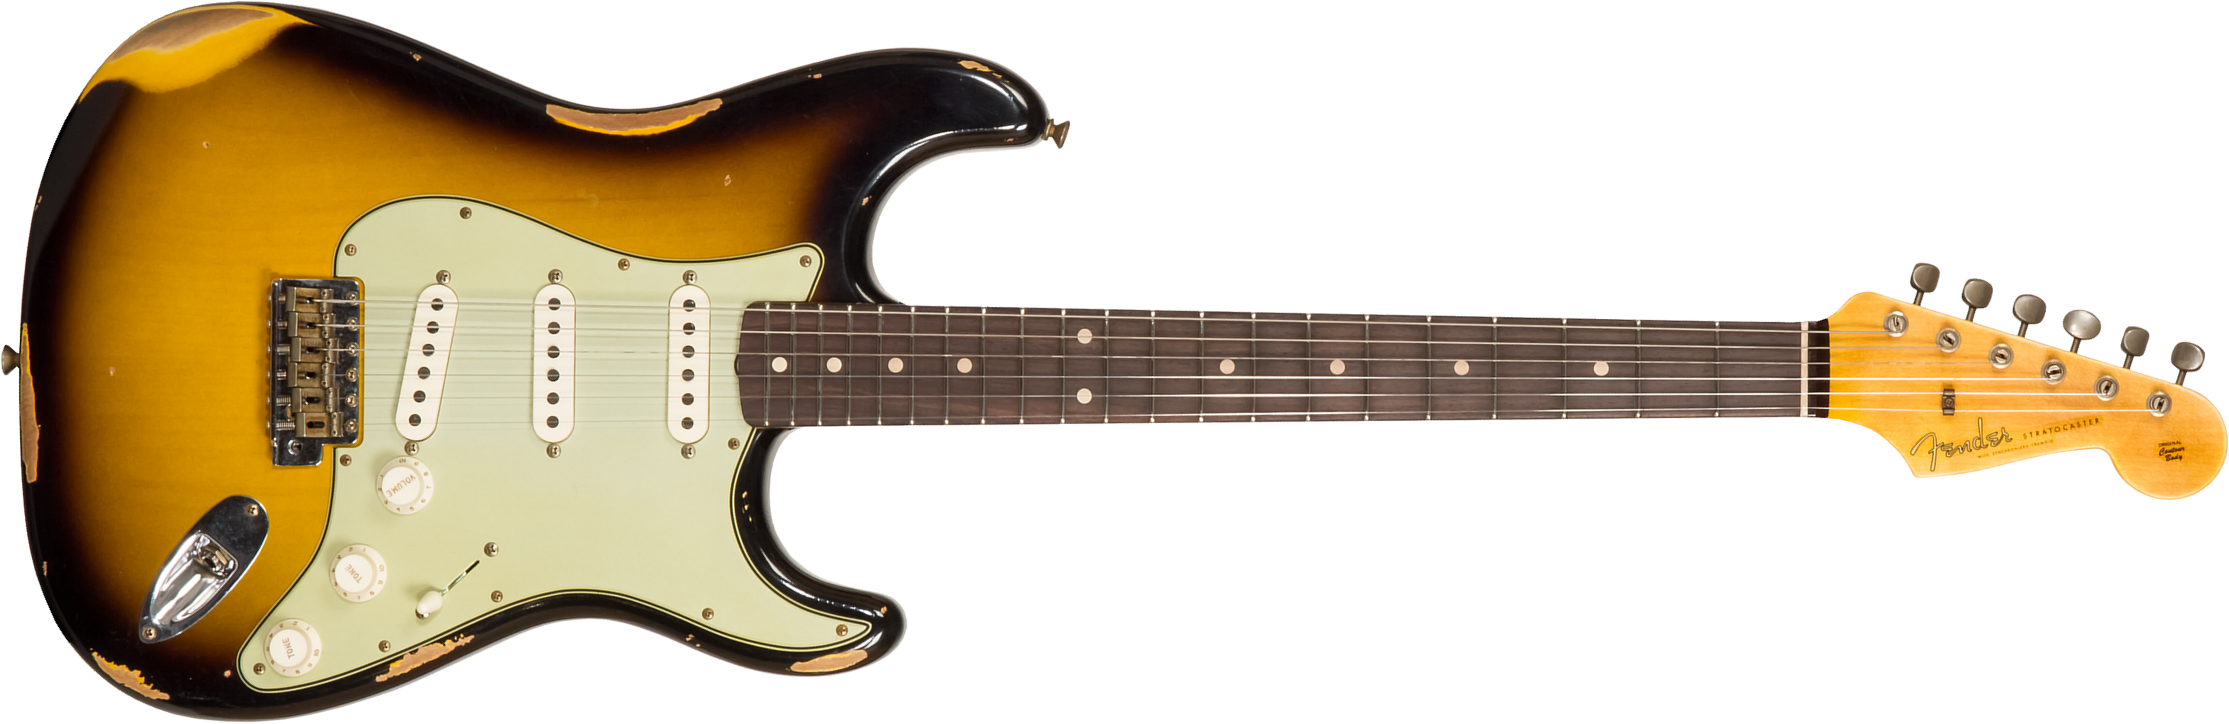 Fender Custom Shop Strat 1959 3s Trem Rw #r117661 - Relic 2-color Sunburst - Str shape electric guitar - Main picture